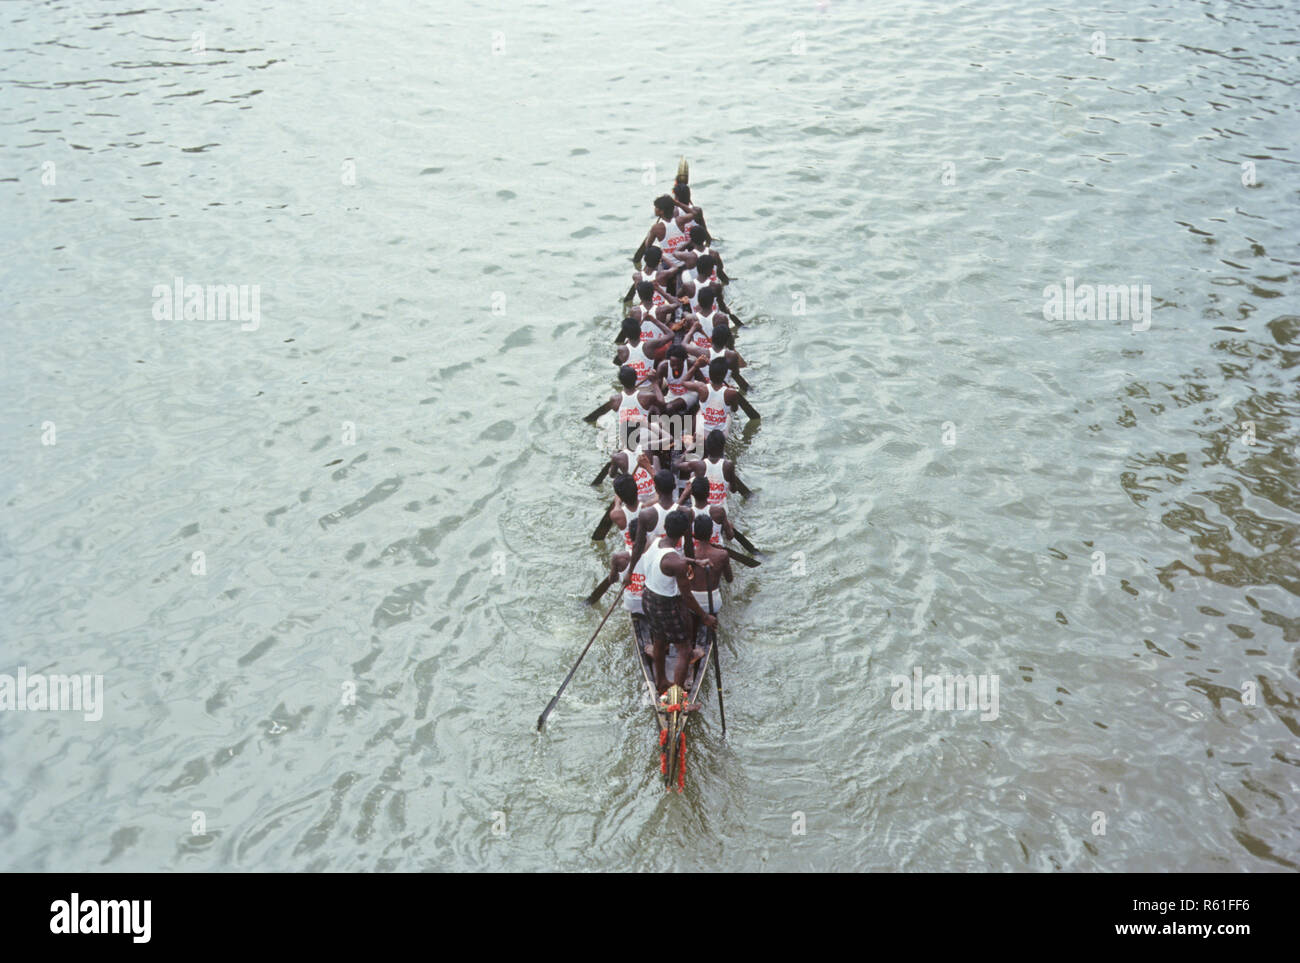 Boat race festival in Kerala, India Stock Photo